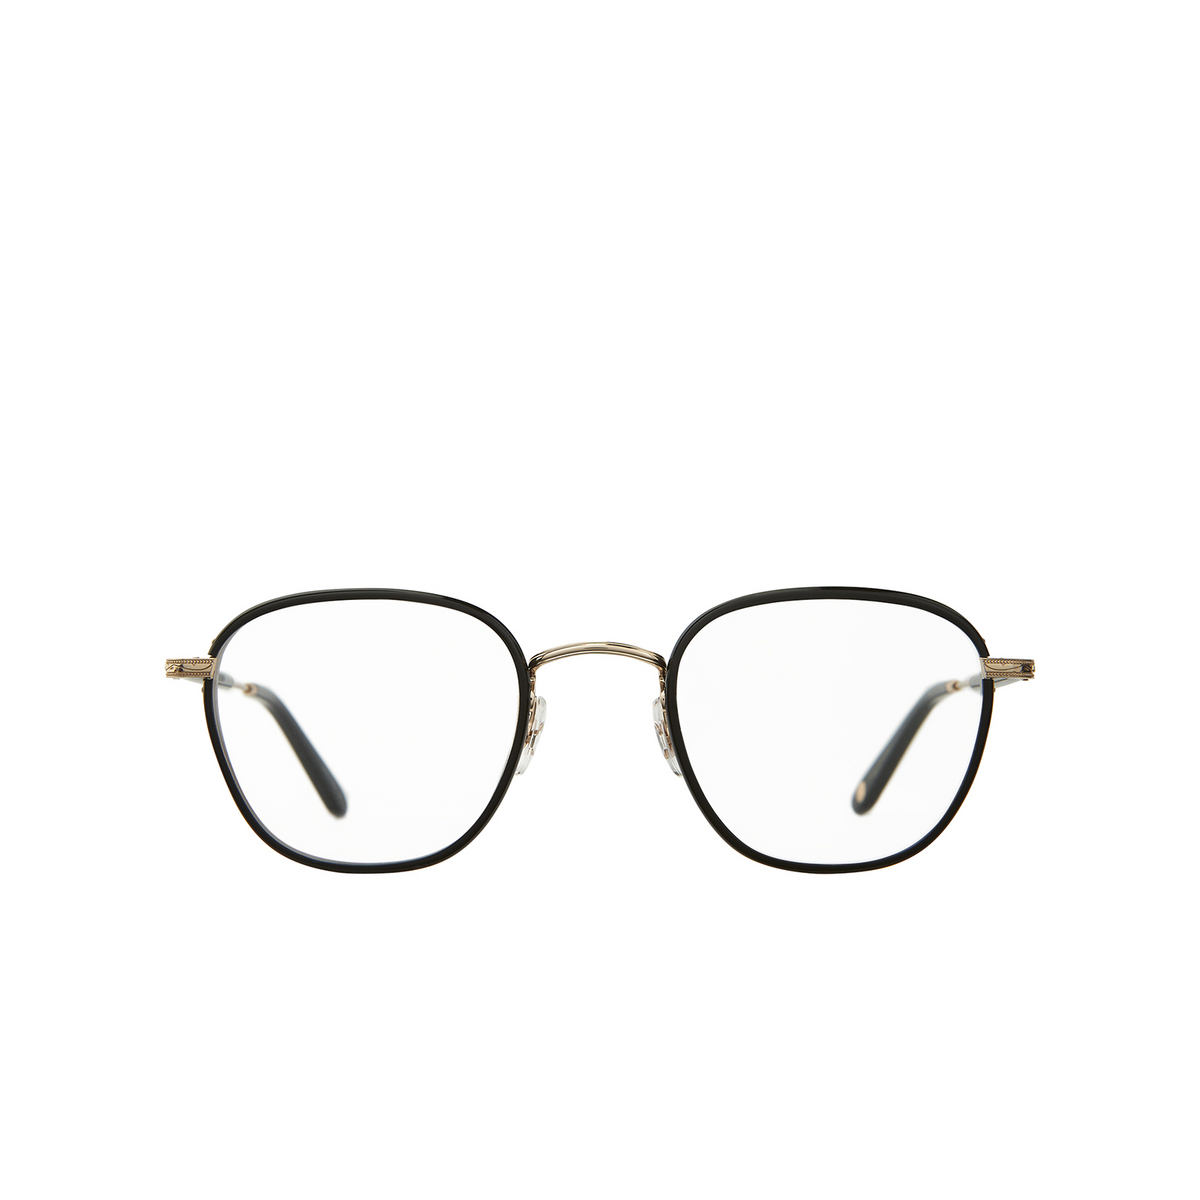 Garrett Leight GRANT Eyeglasses BK-G-BK Black-Gold-Black - front view